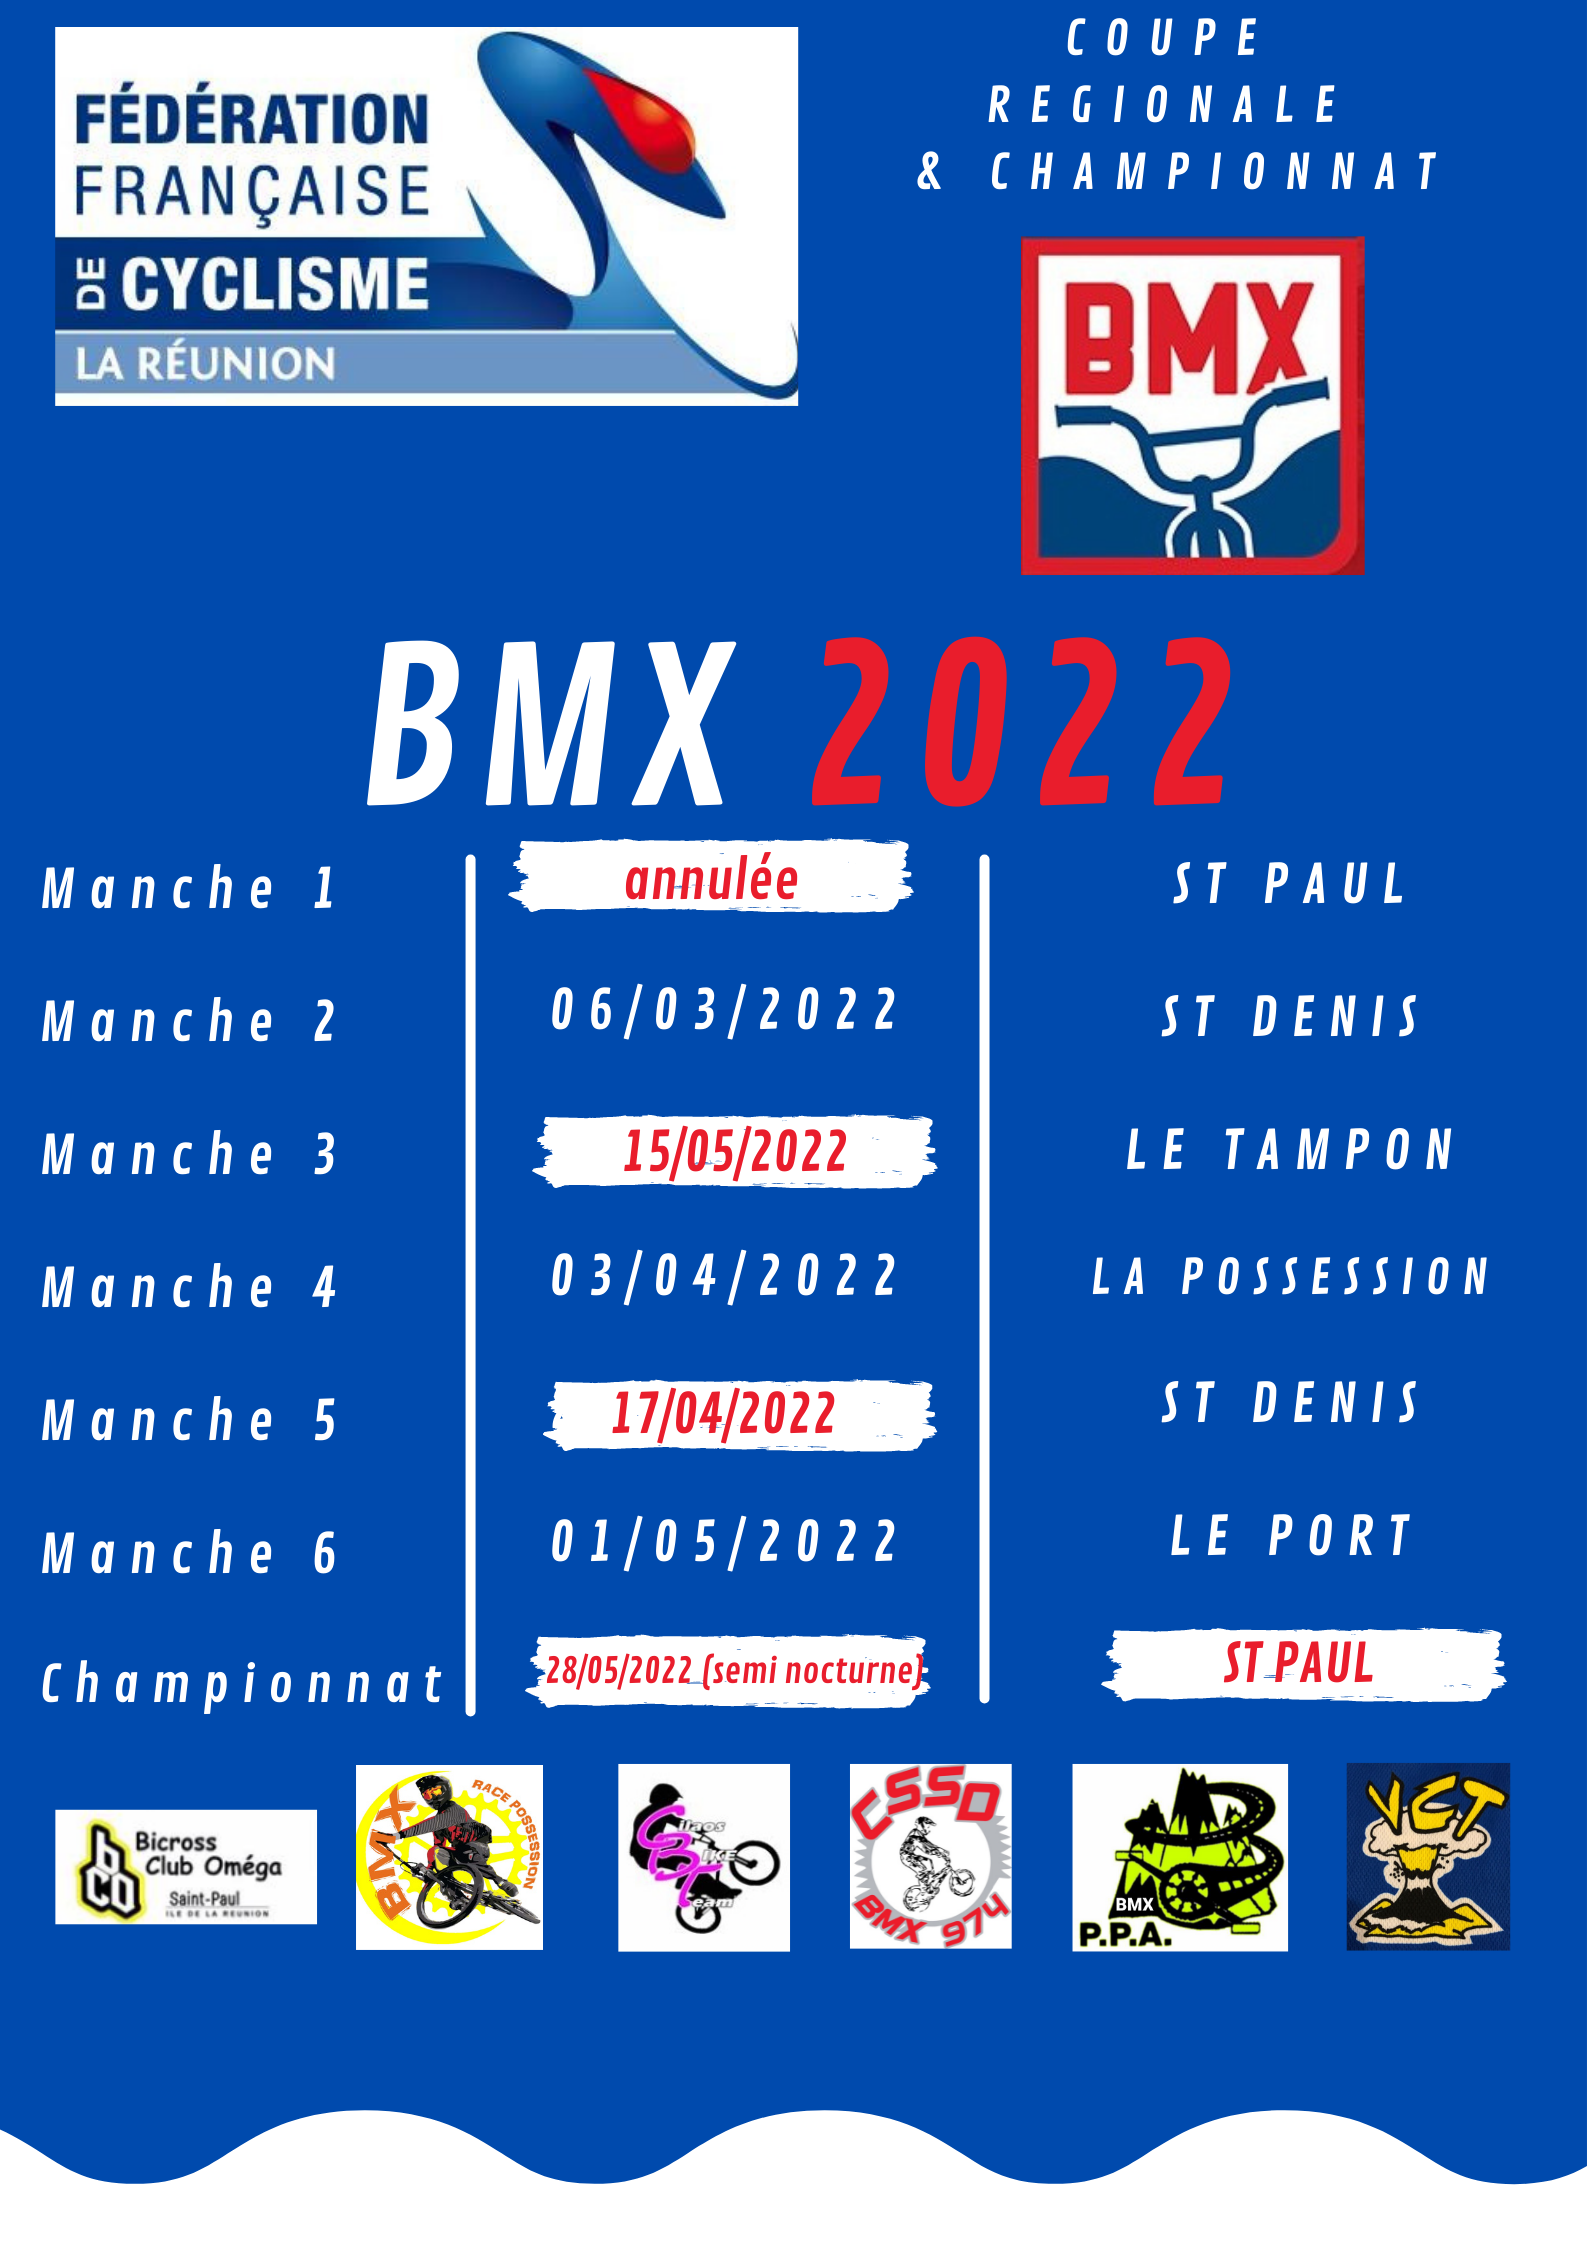 Le clendrier régional 2022 de BMX